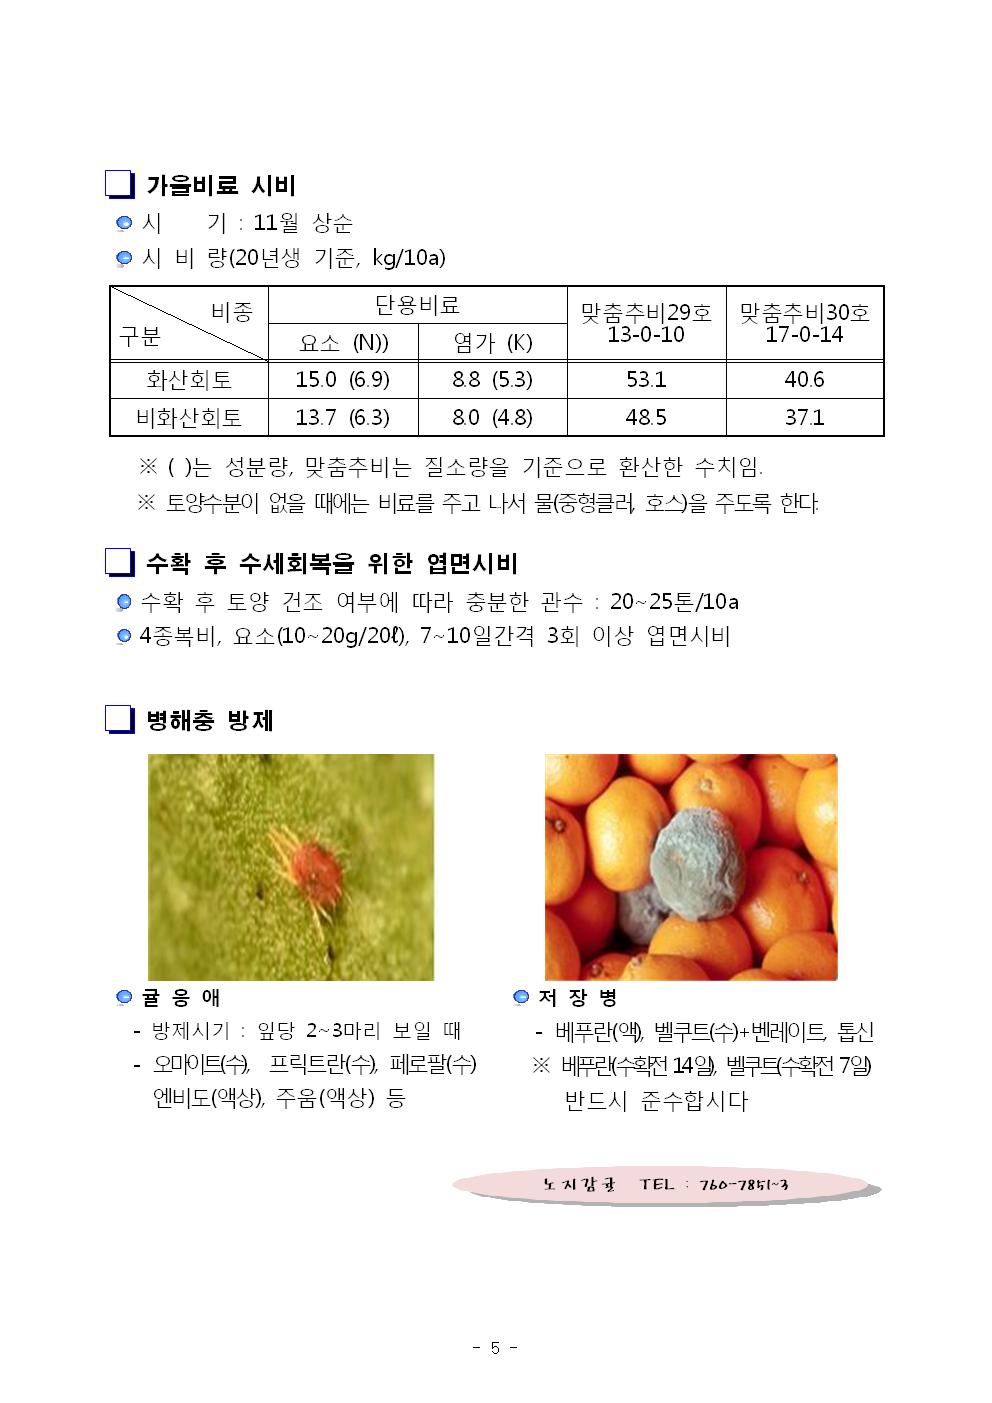 서귀포농업 인터넷정보지 11월호